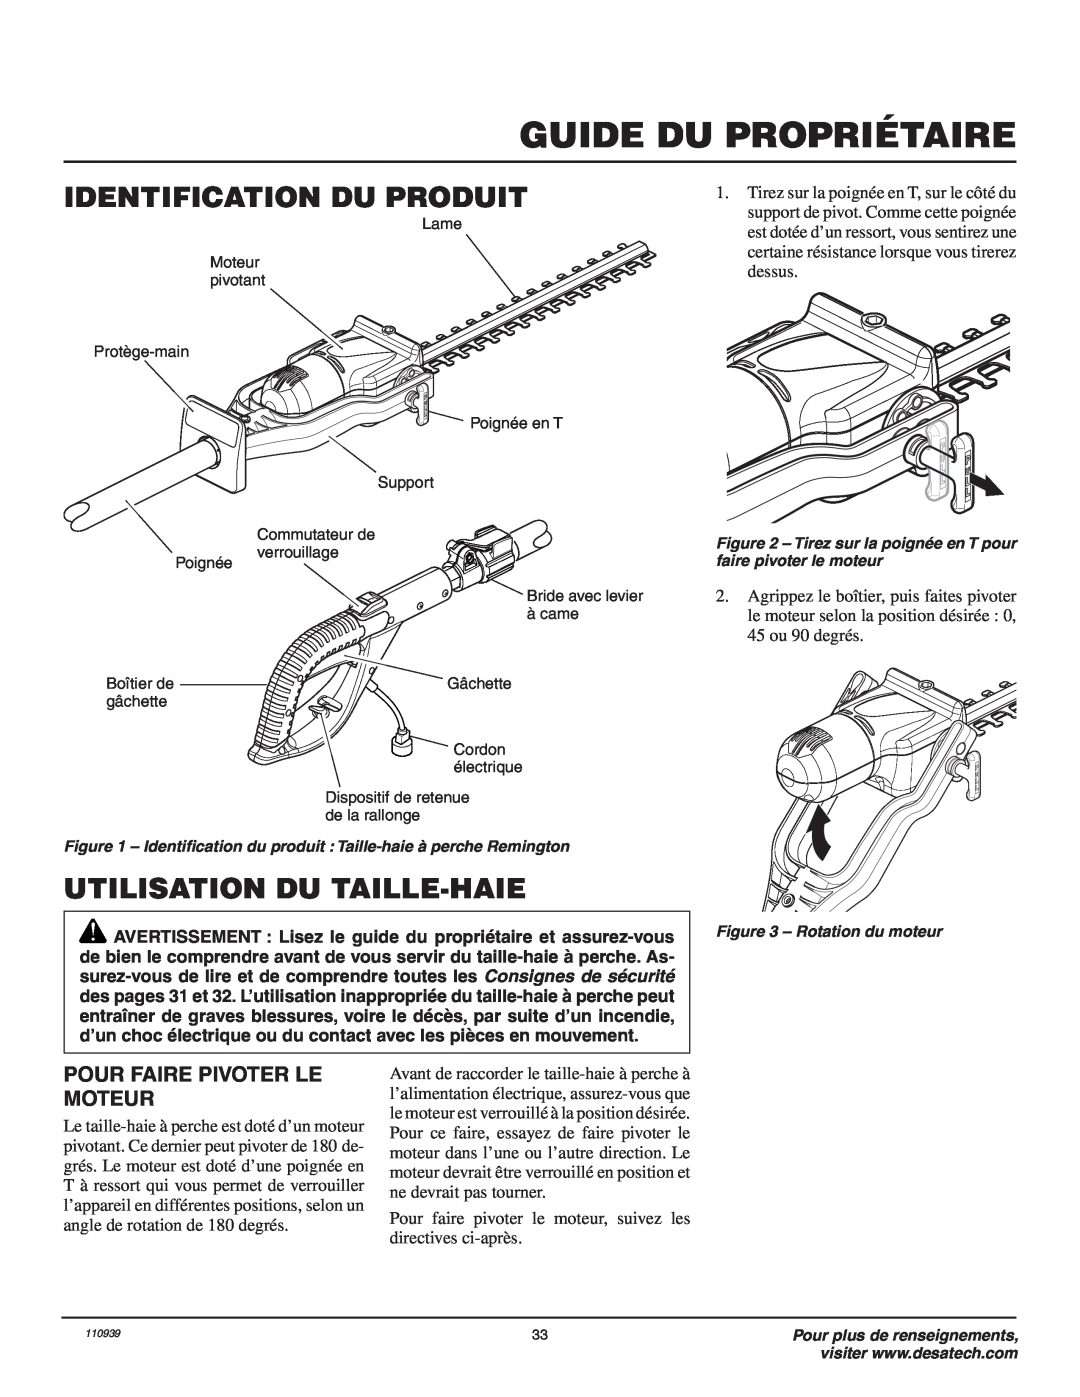 Remington 110946-01A owner manual Identification Du Produit, Utilisation Du Taille-Haie, Pour Faire Pivoter Le Moteur 